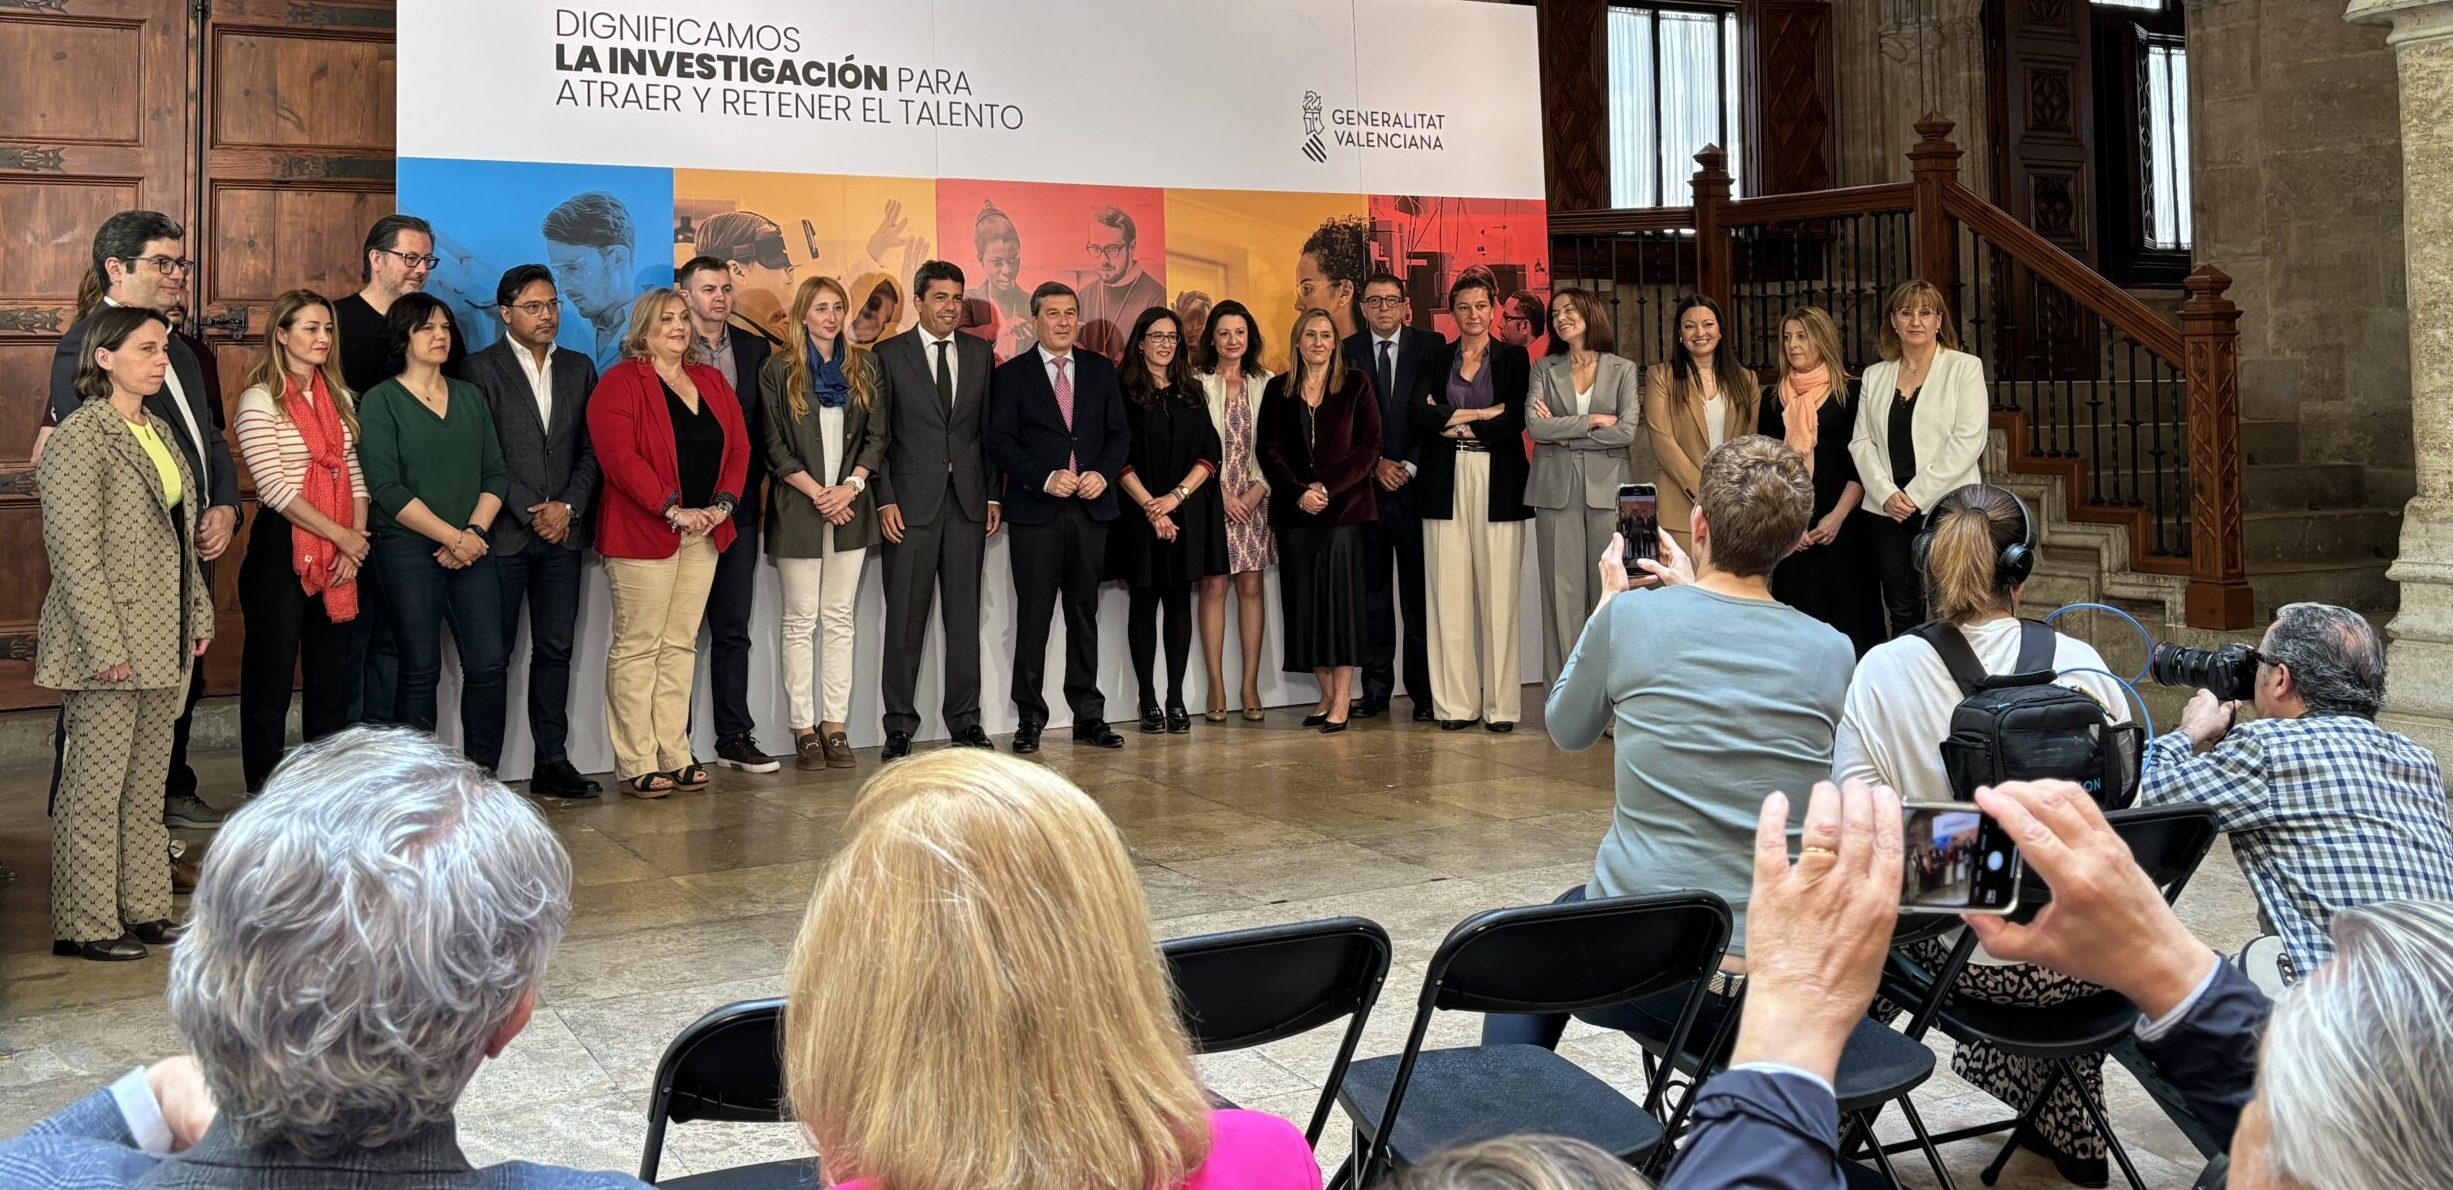 Firmado el Convenio Colectivo de las Fundaciones de Investigación Biomédica de la Comunitat Valenciana para atraer y retener talento